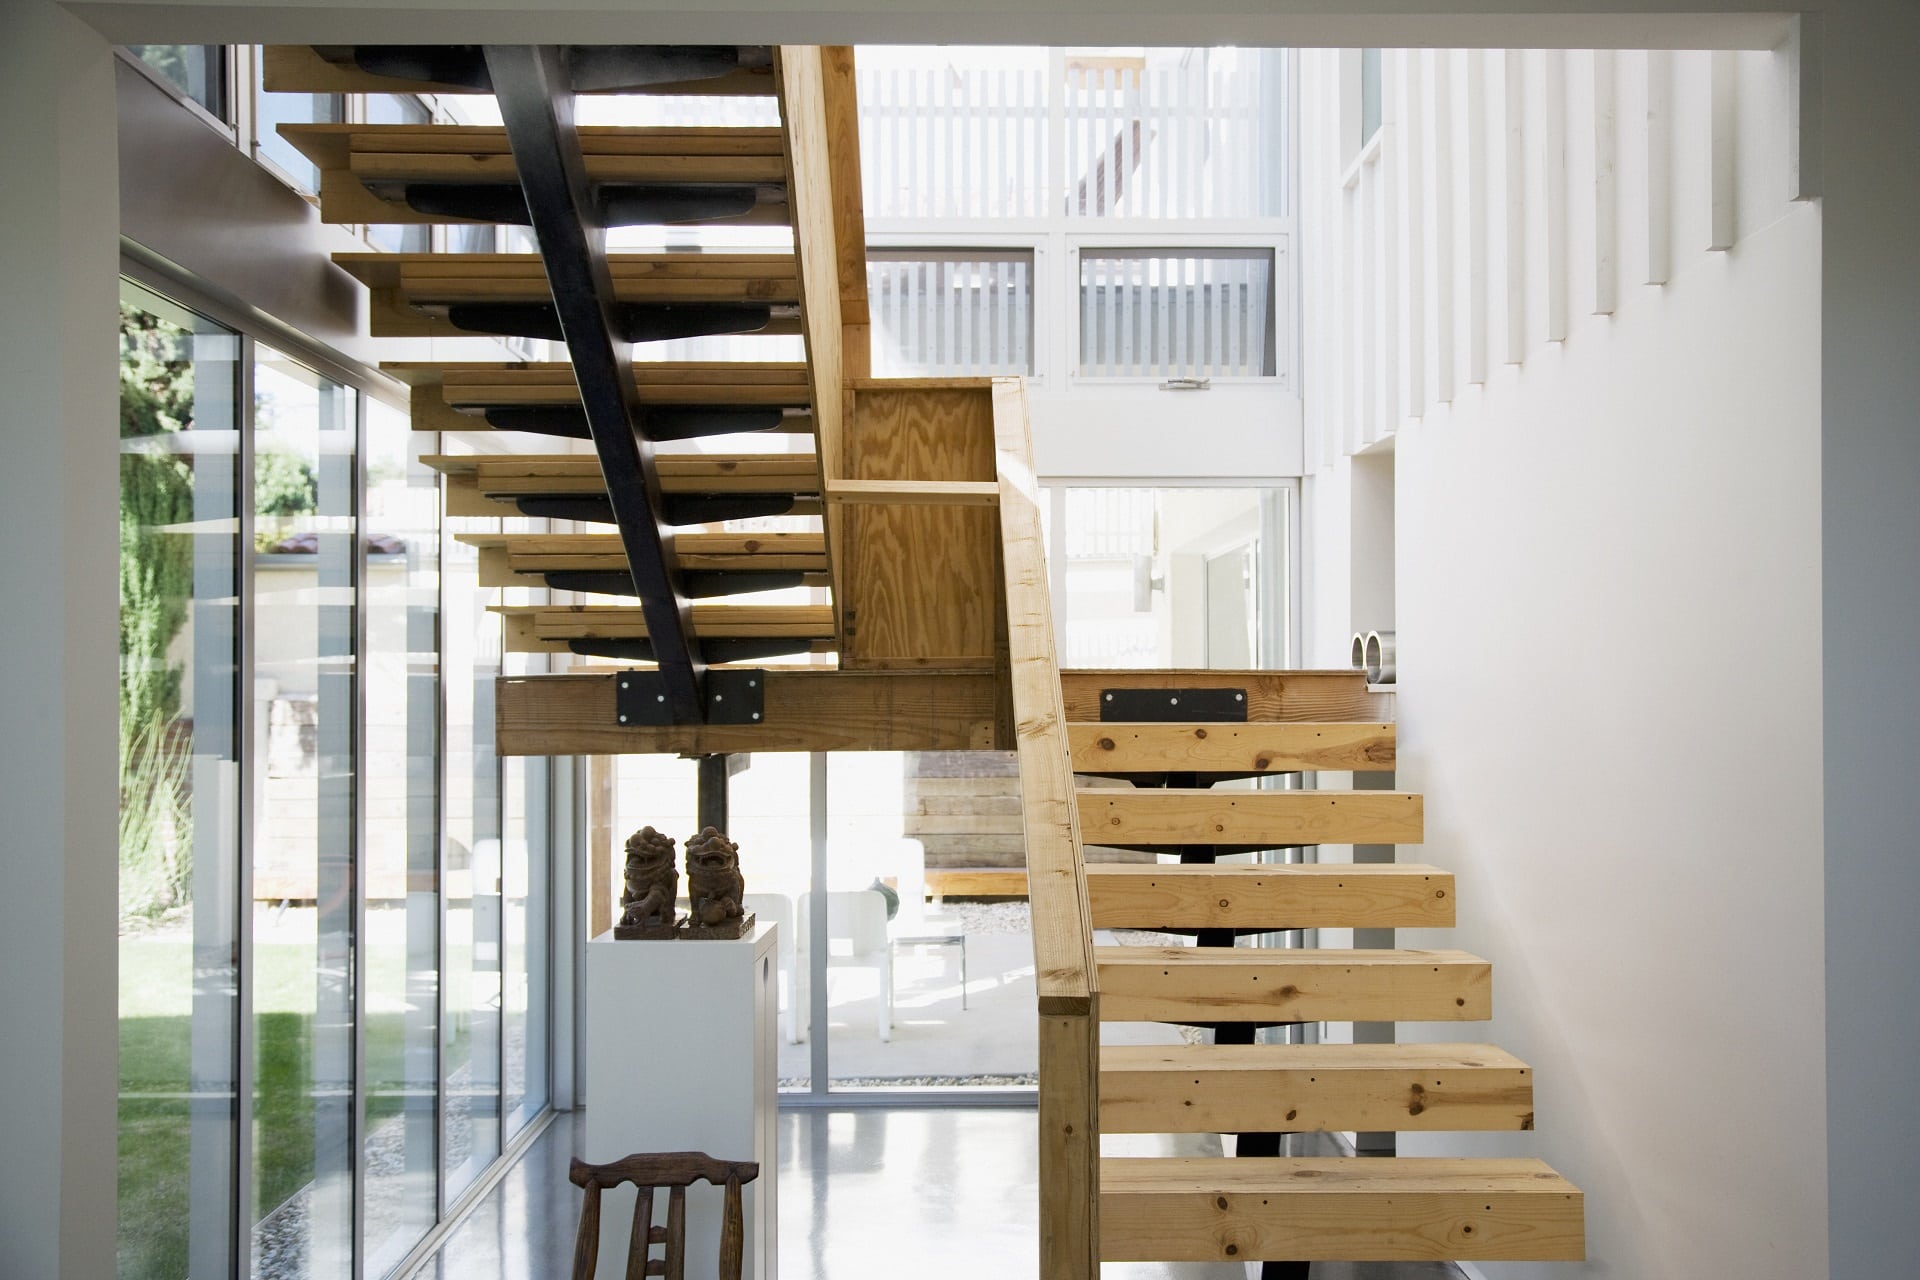 Interior of modern house, wooden stairway